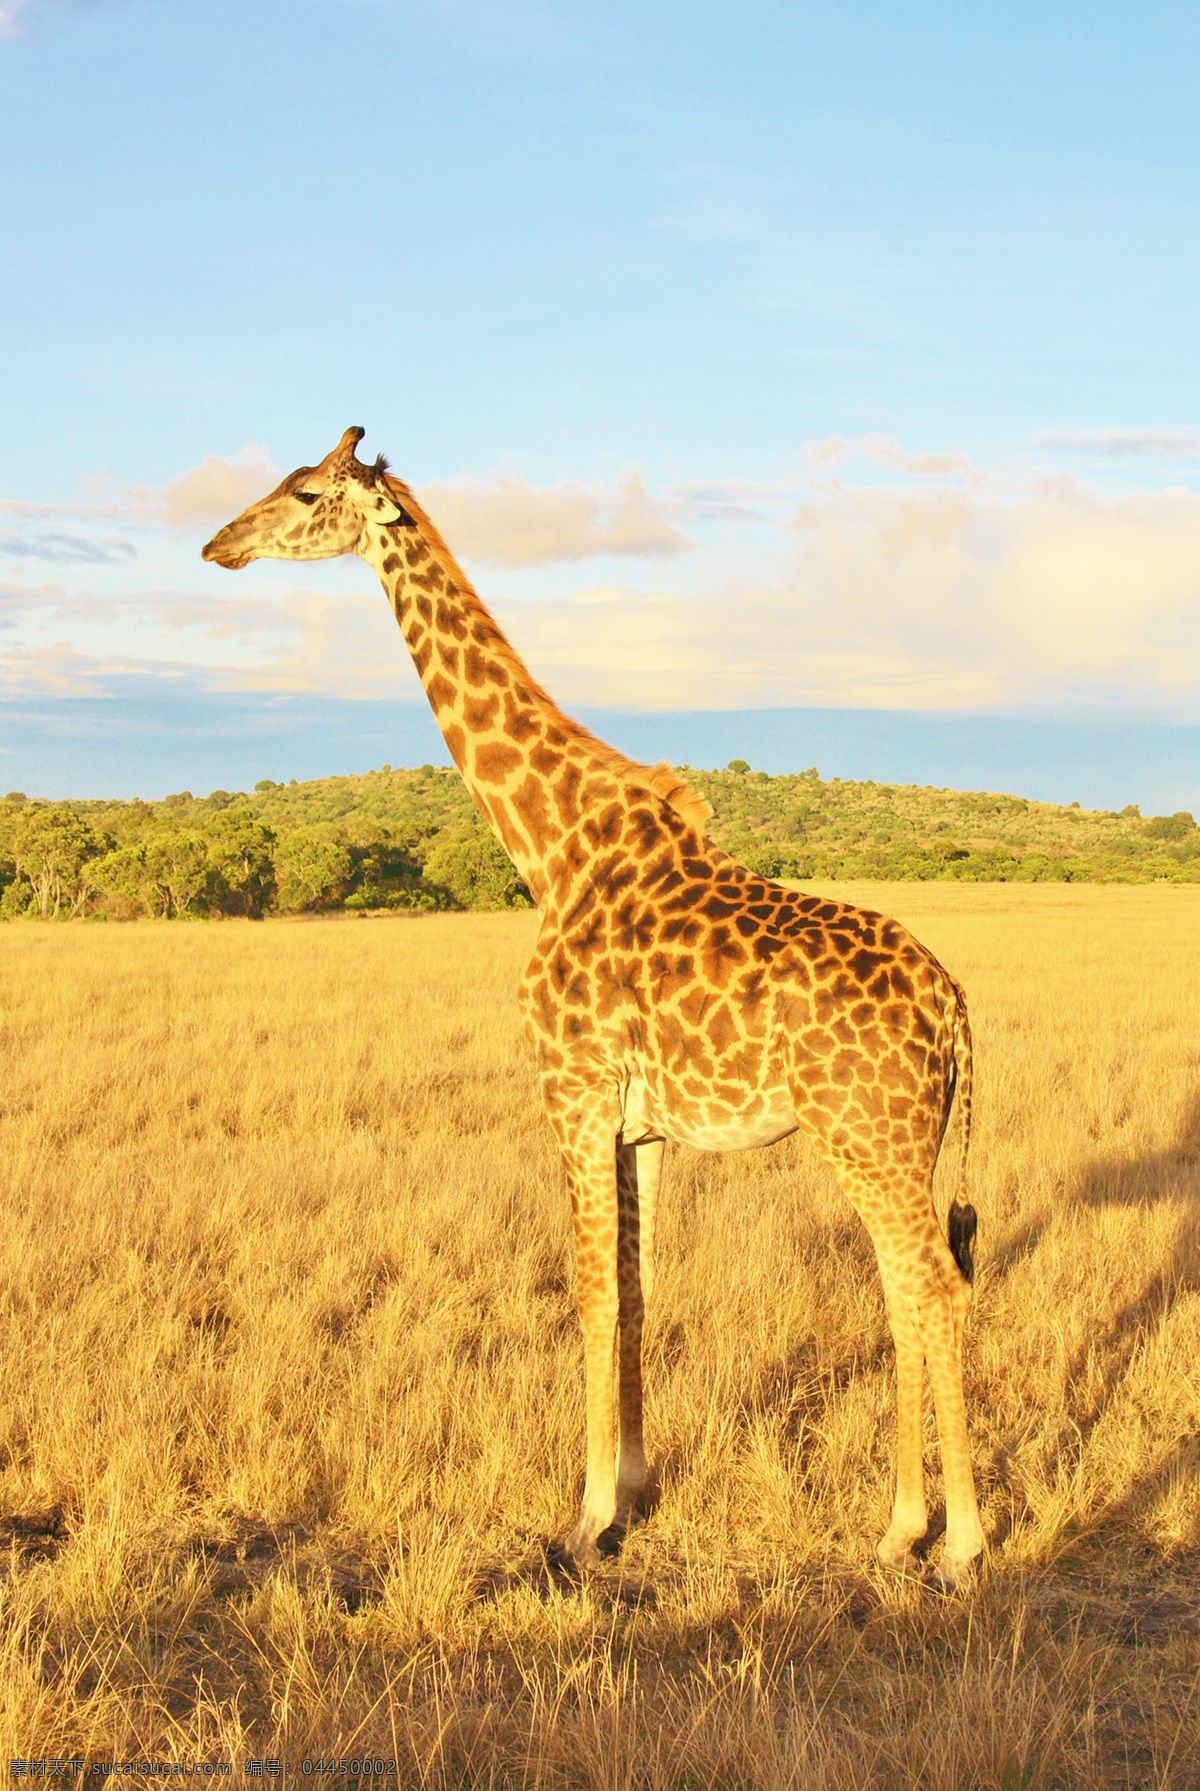 长颈鹿 麒麟鹿 长脖鹿 giraffe 野生动物